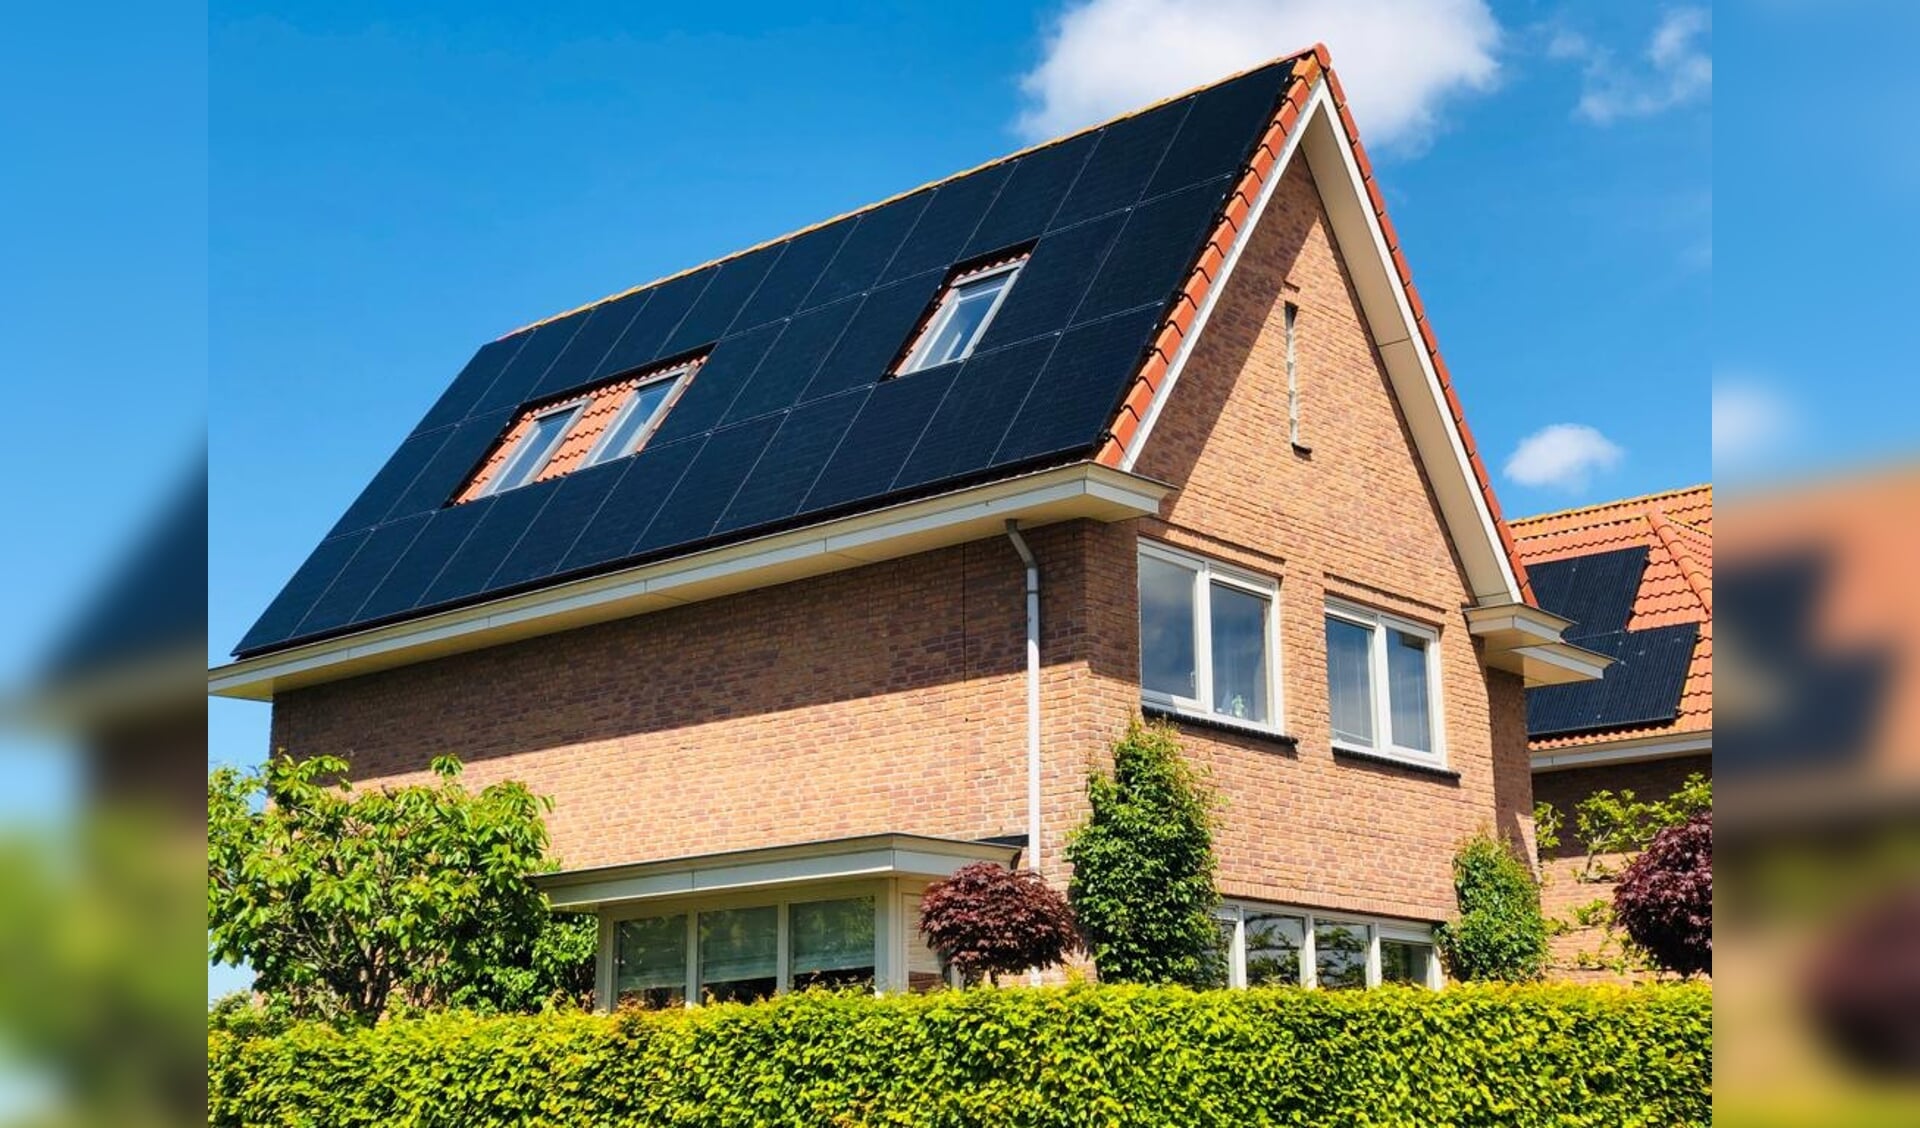 In Uitgeest liggen zonnepanelen op 52,3% van de woningen.